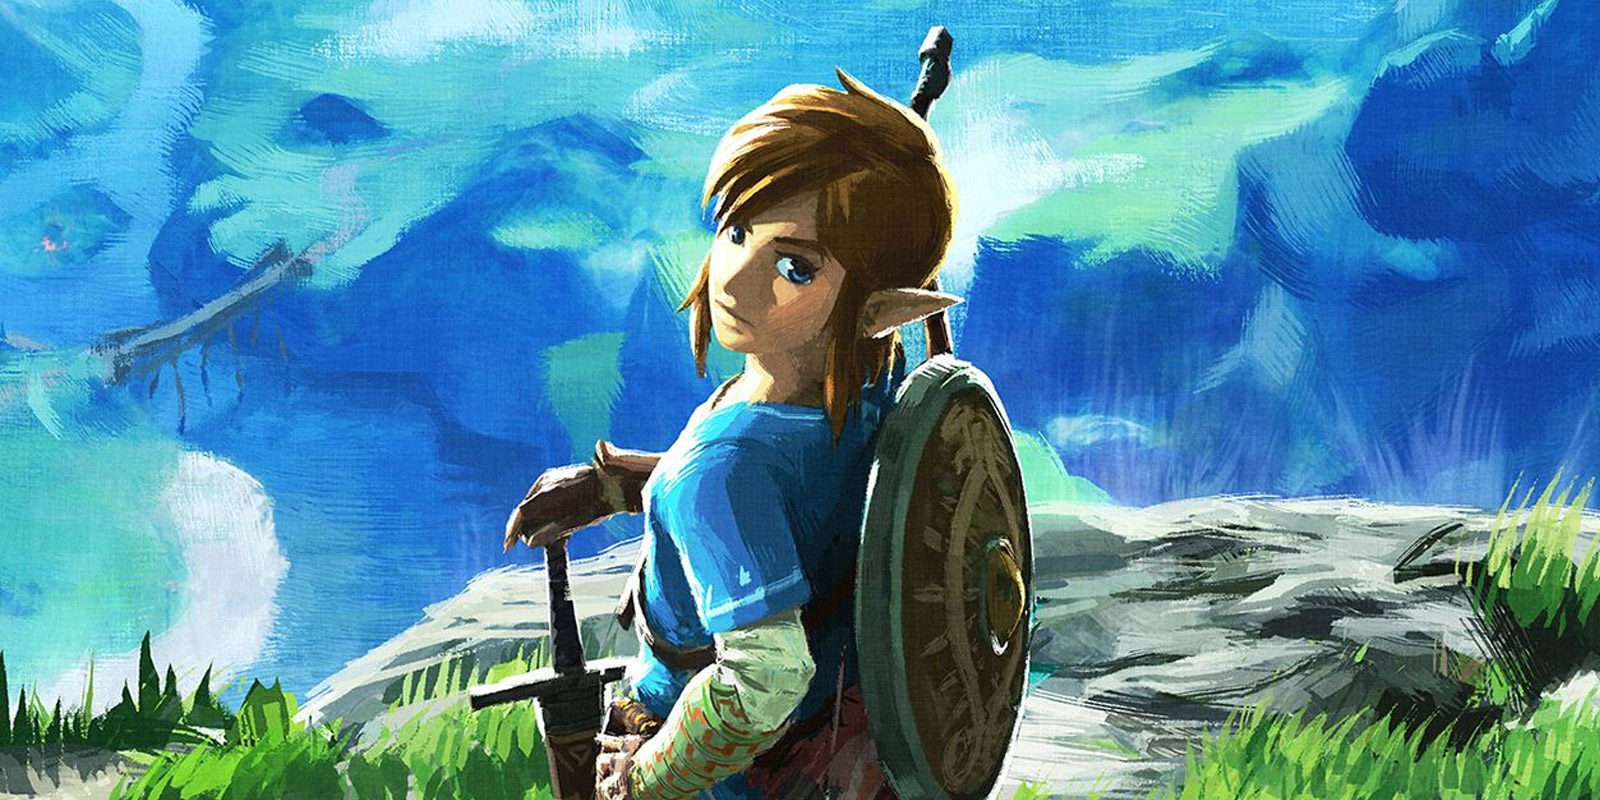 Consiguen completar 'The Legend of Zelda: Breath of the Wild' en poco más de una hora